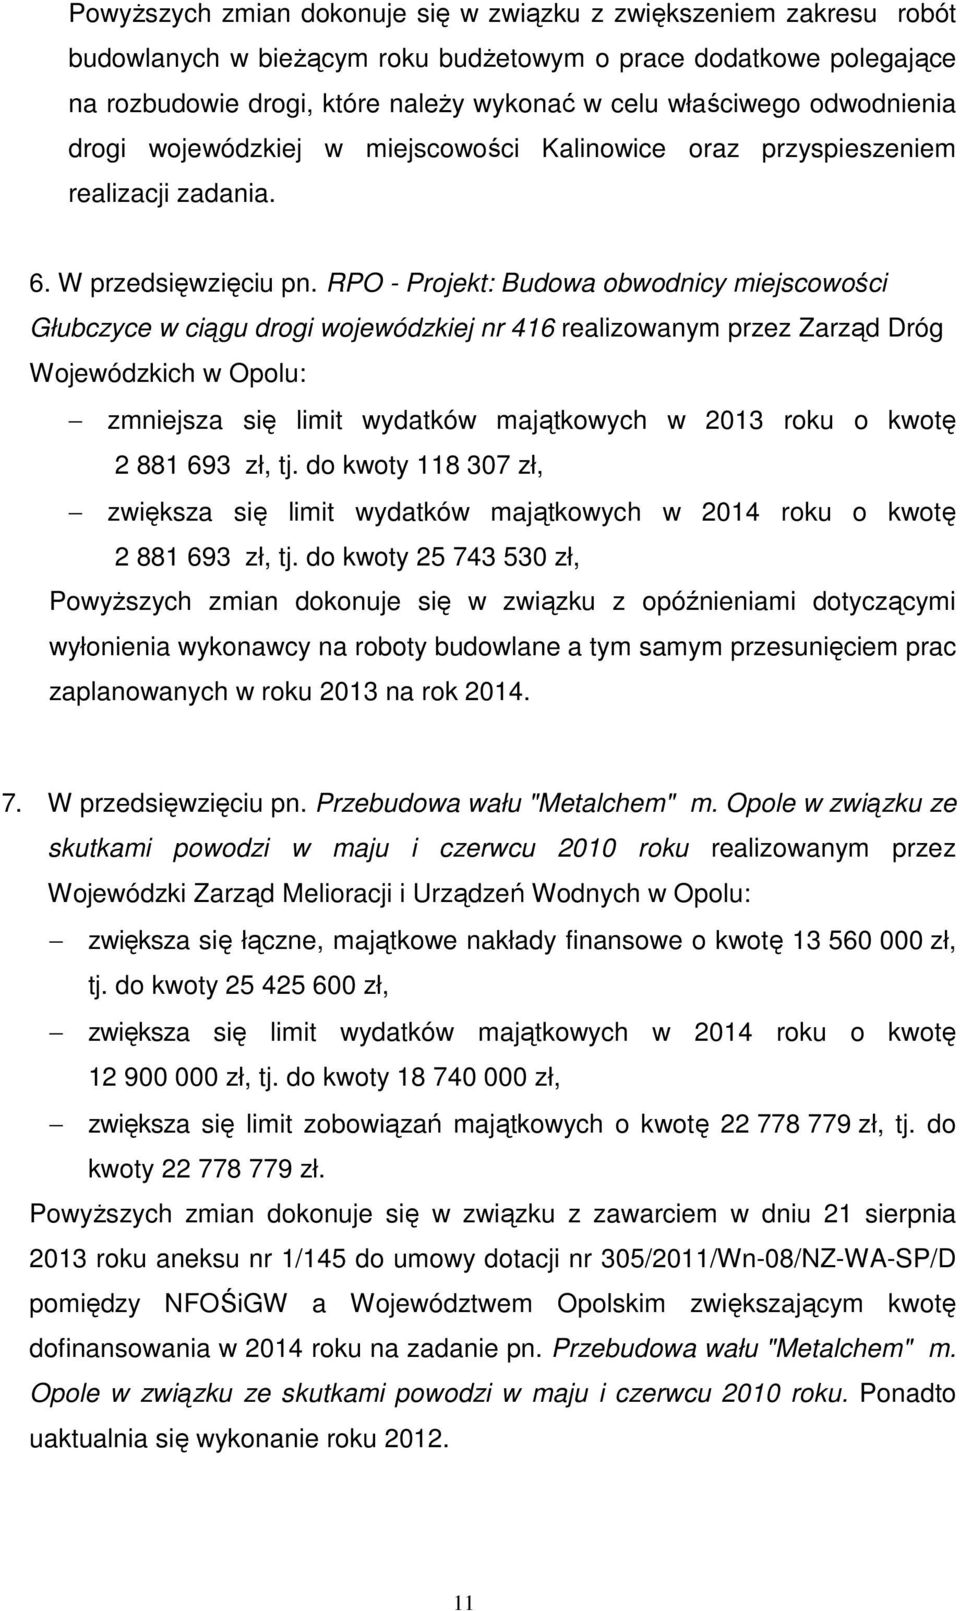 RPO - Projekt: Budowa obwodnicy miejscowości Głubczyce w ciągu drogi wojewódzkiej nr 416 realizowanym przez Zarząd Dróg Wojewódzkich w Opolu: zmniejsza się limit wydatków majątkowych w 2013 roku o